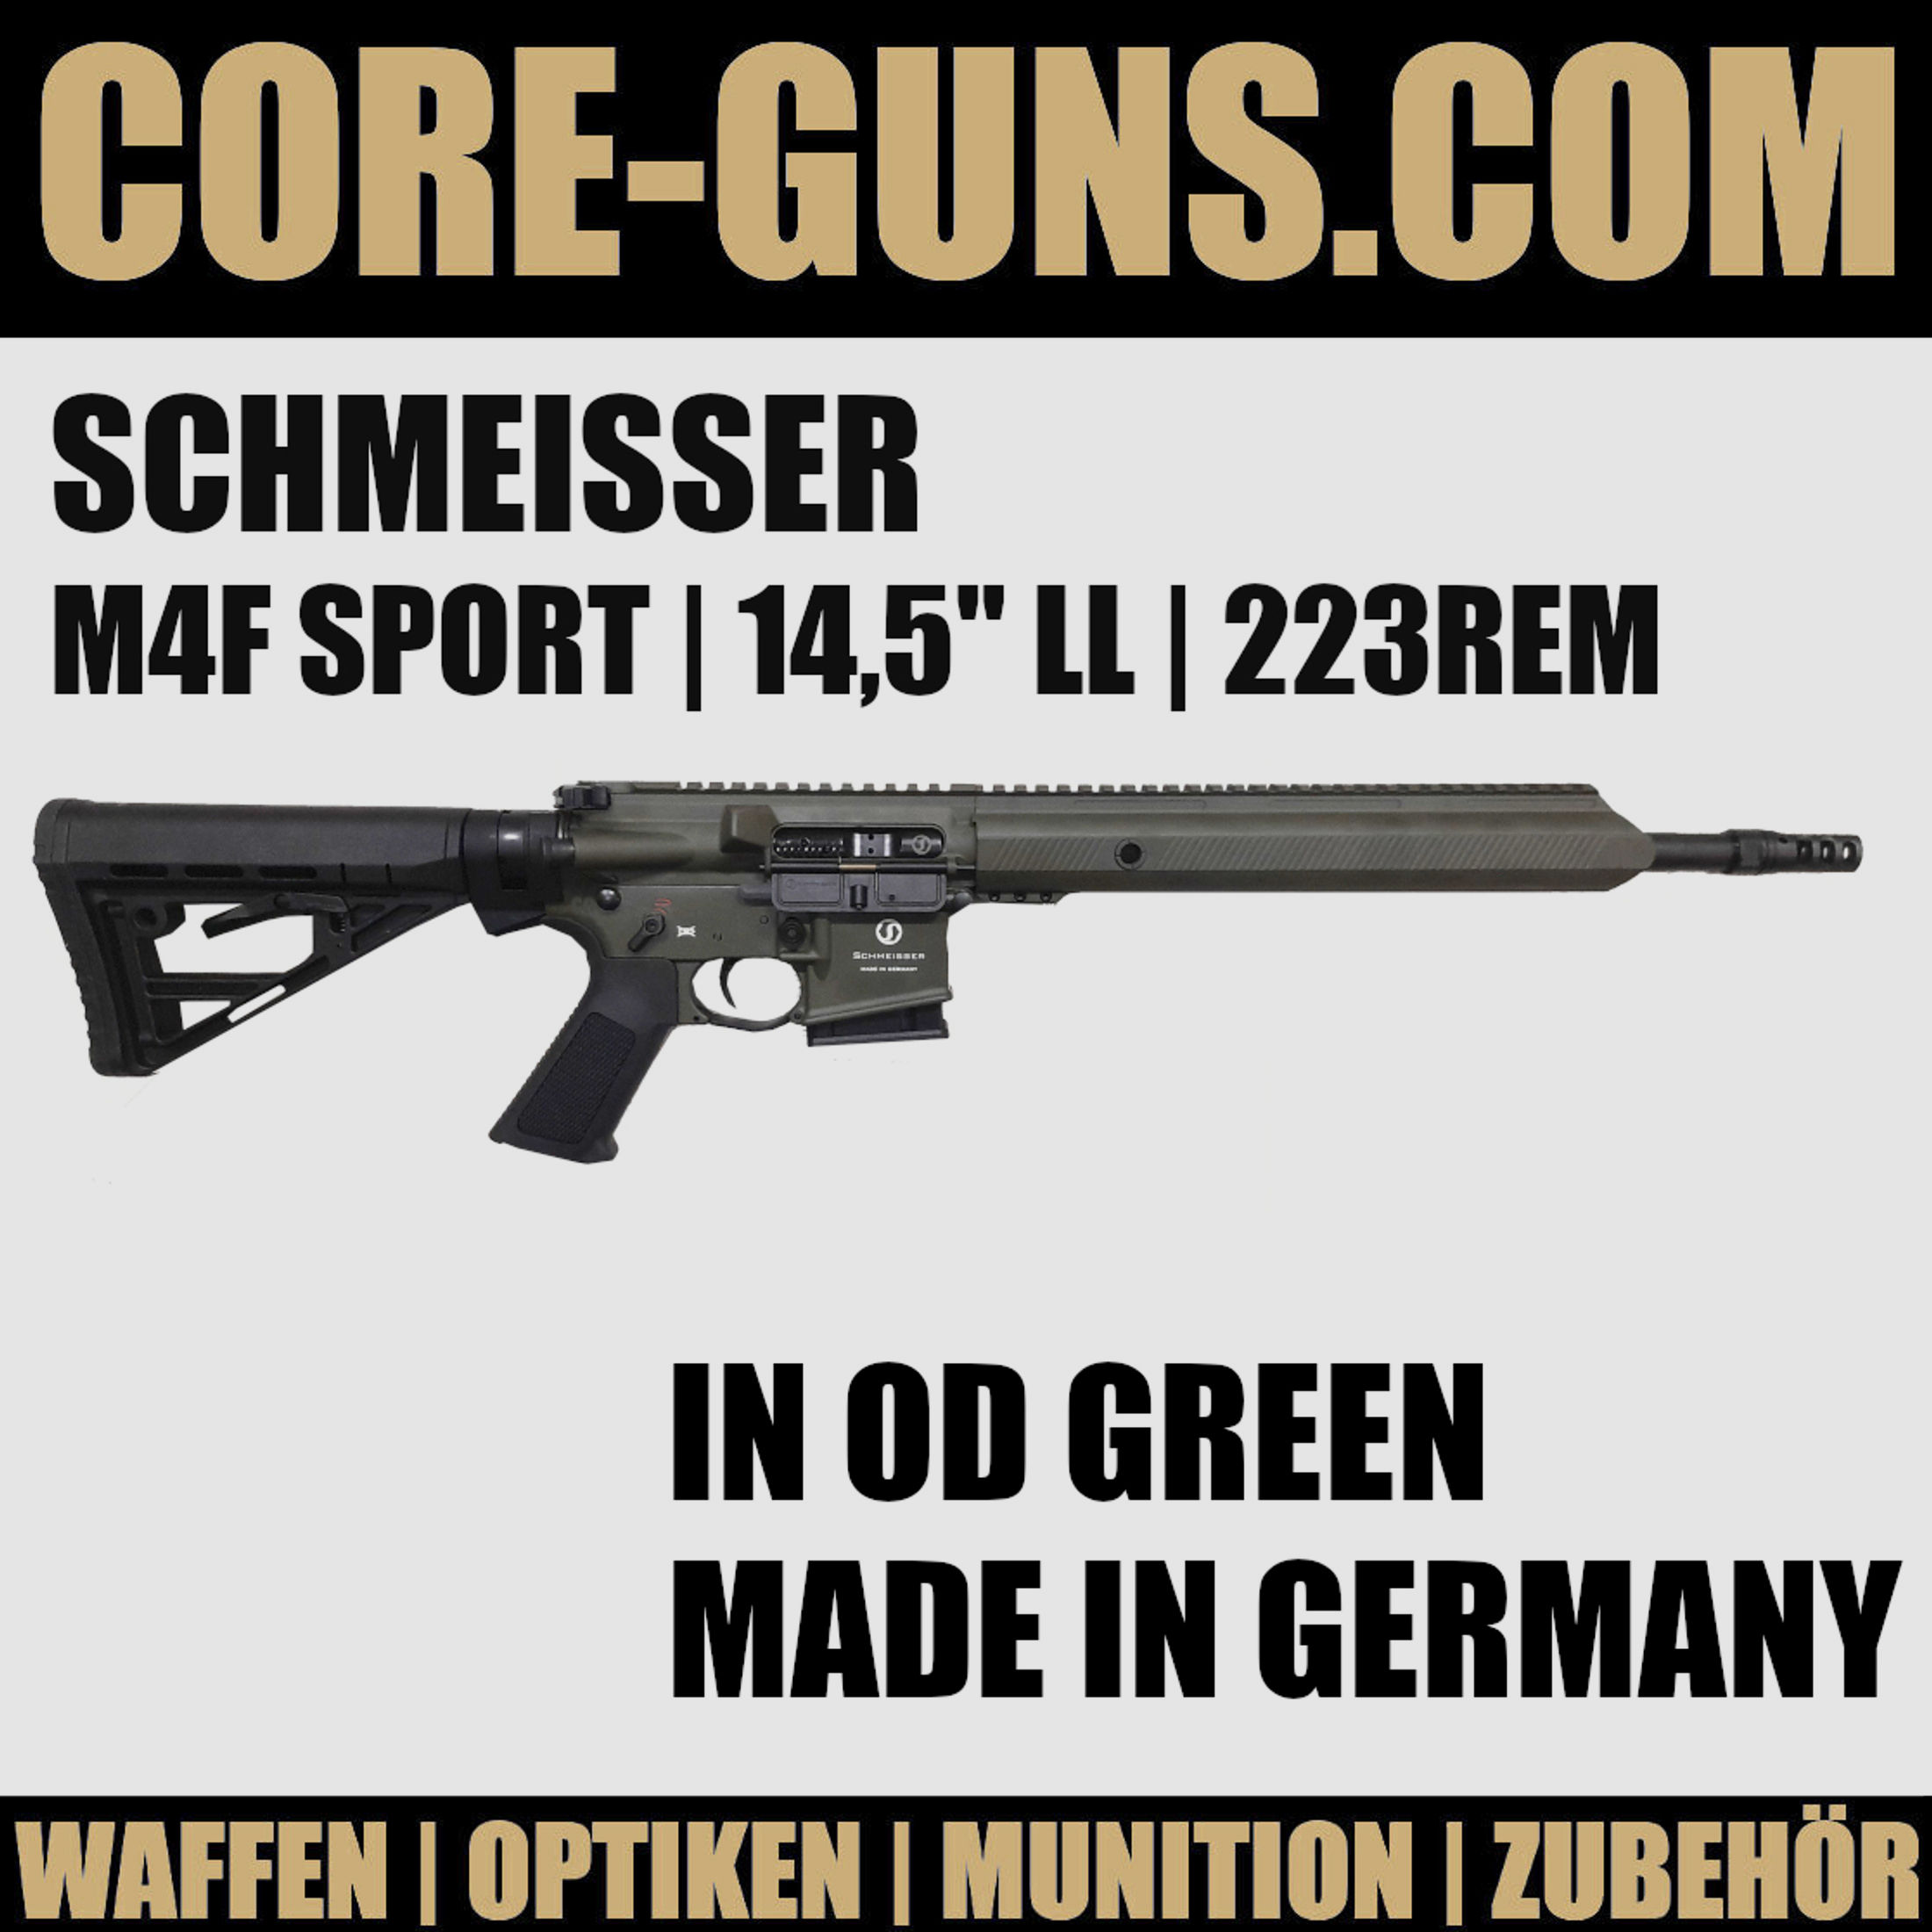 Schmeisser AR15 M4F Sport 14,5" LL 223REM in OD GREEN